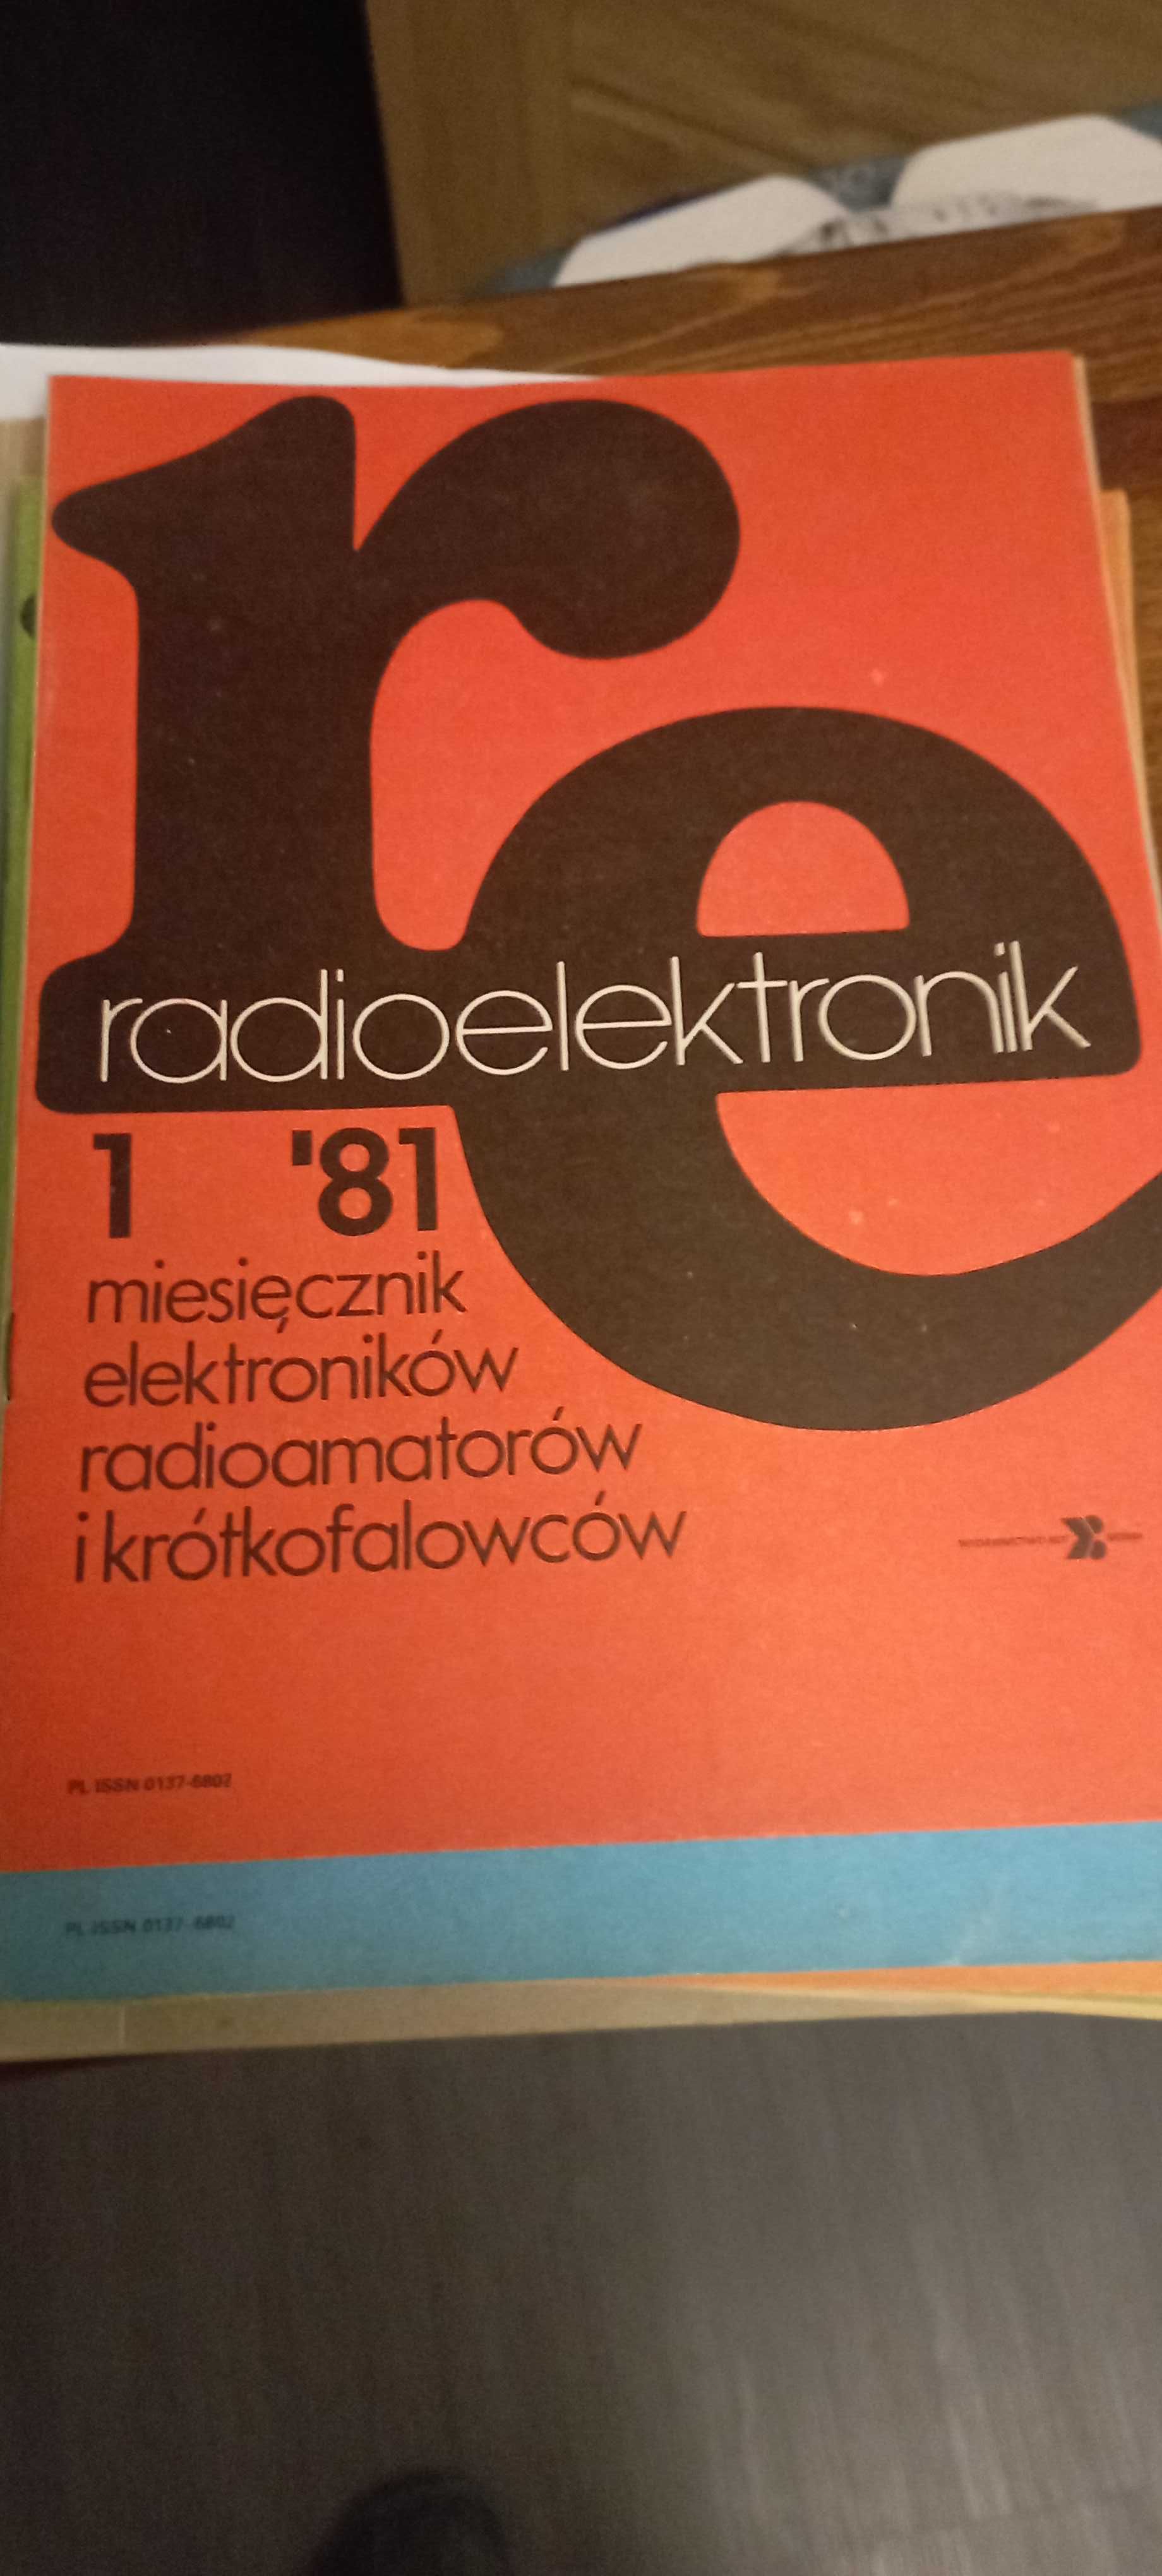 Czasopisma Radioelektronik i Radioamator